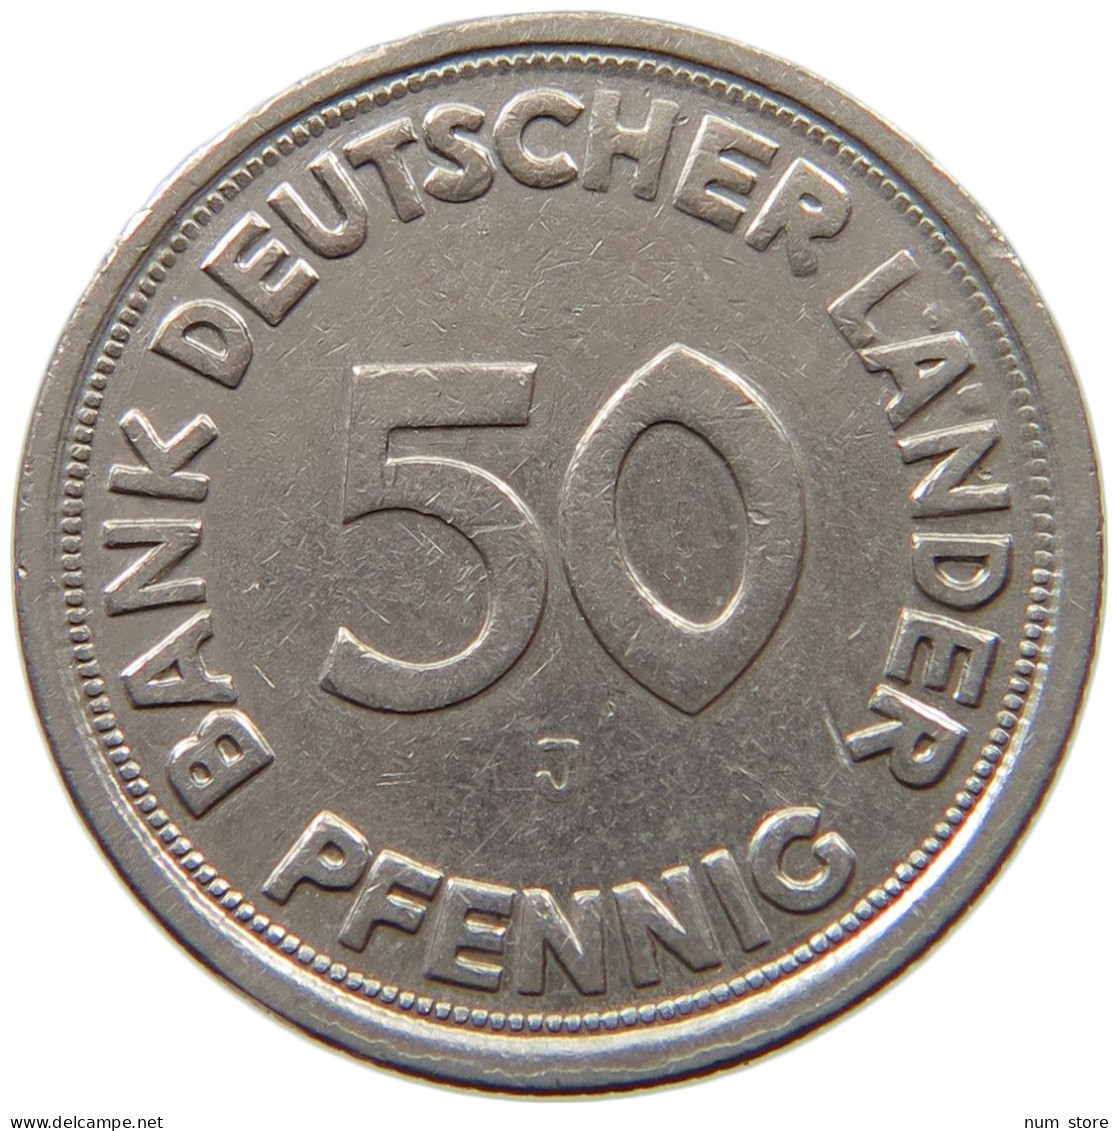 BRD 50 PFENNIG O.J. FEHLPRÄGUNG - OHNE JAHR #MA 009175 - 50 Pfennig